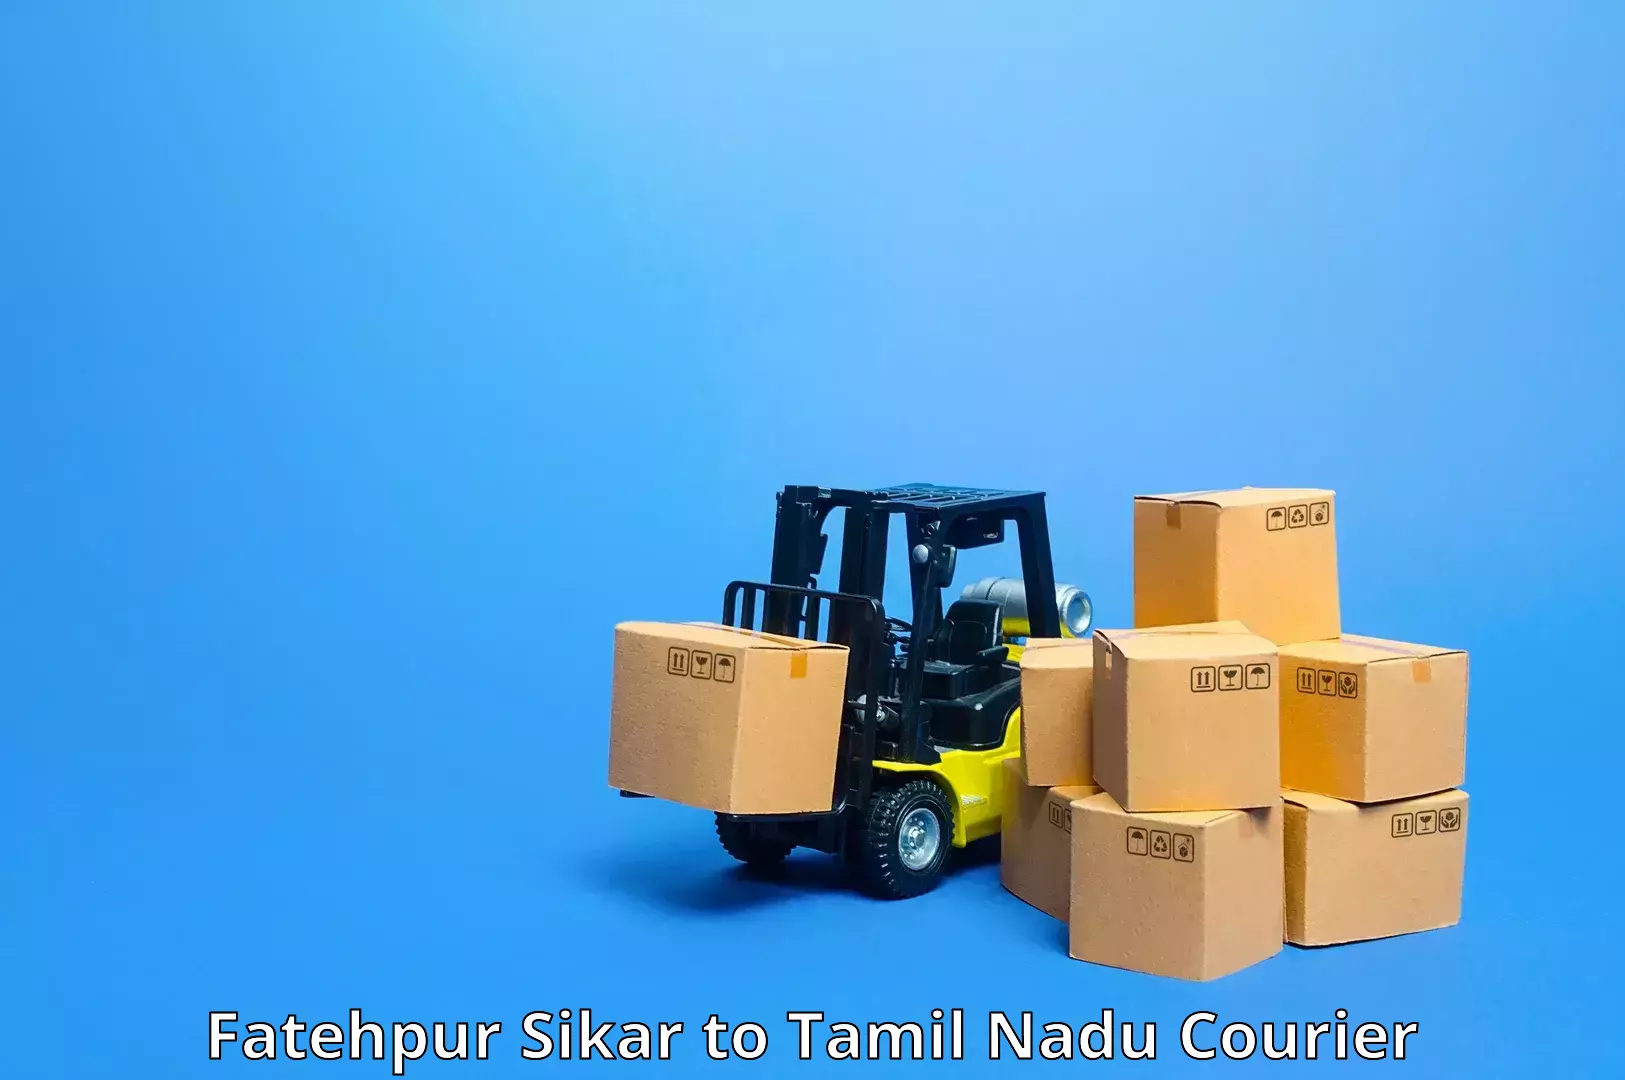 High-capacity parcel service Fatehpur Sikar to Maharajapuram